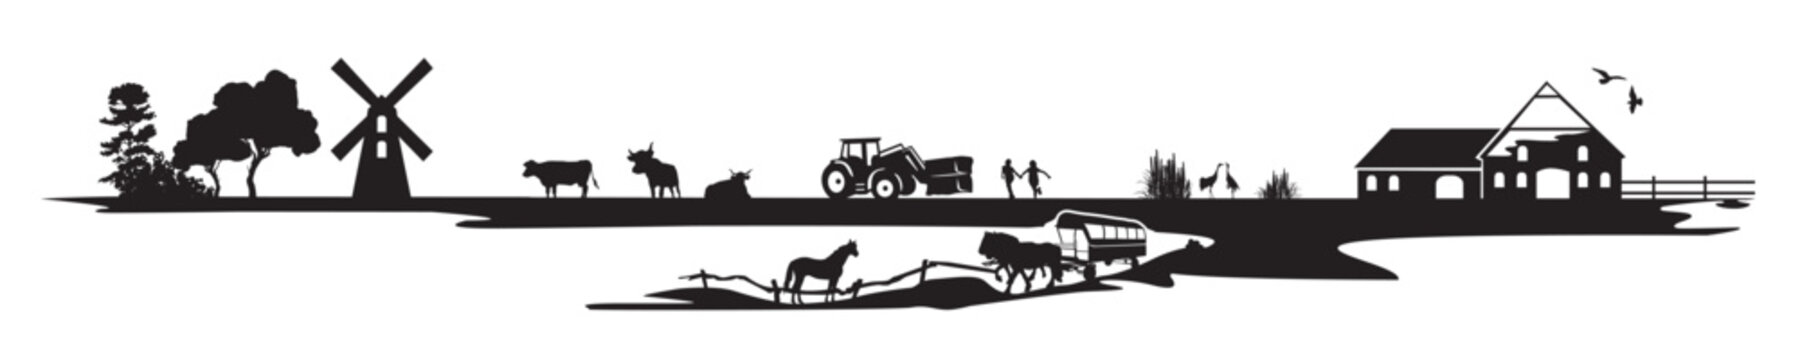 Illustration einer Bauernhof Landschaft 